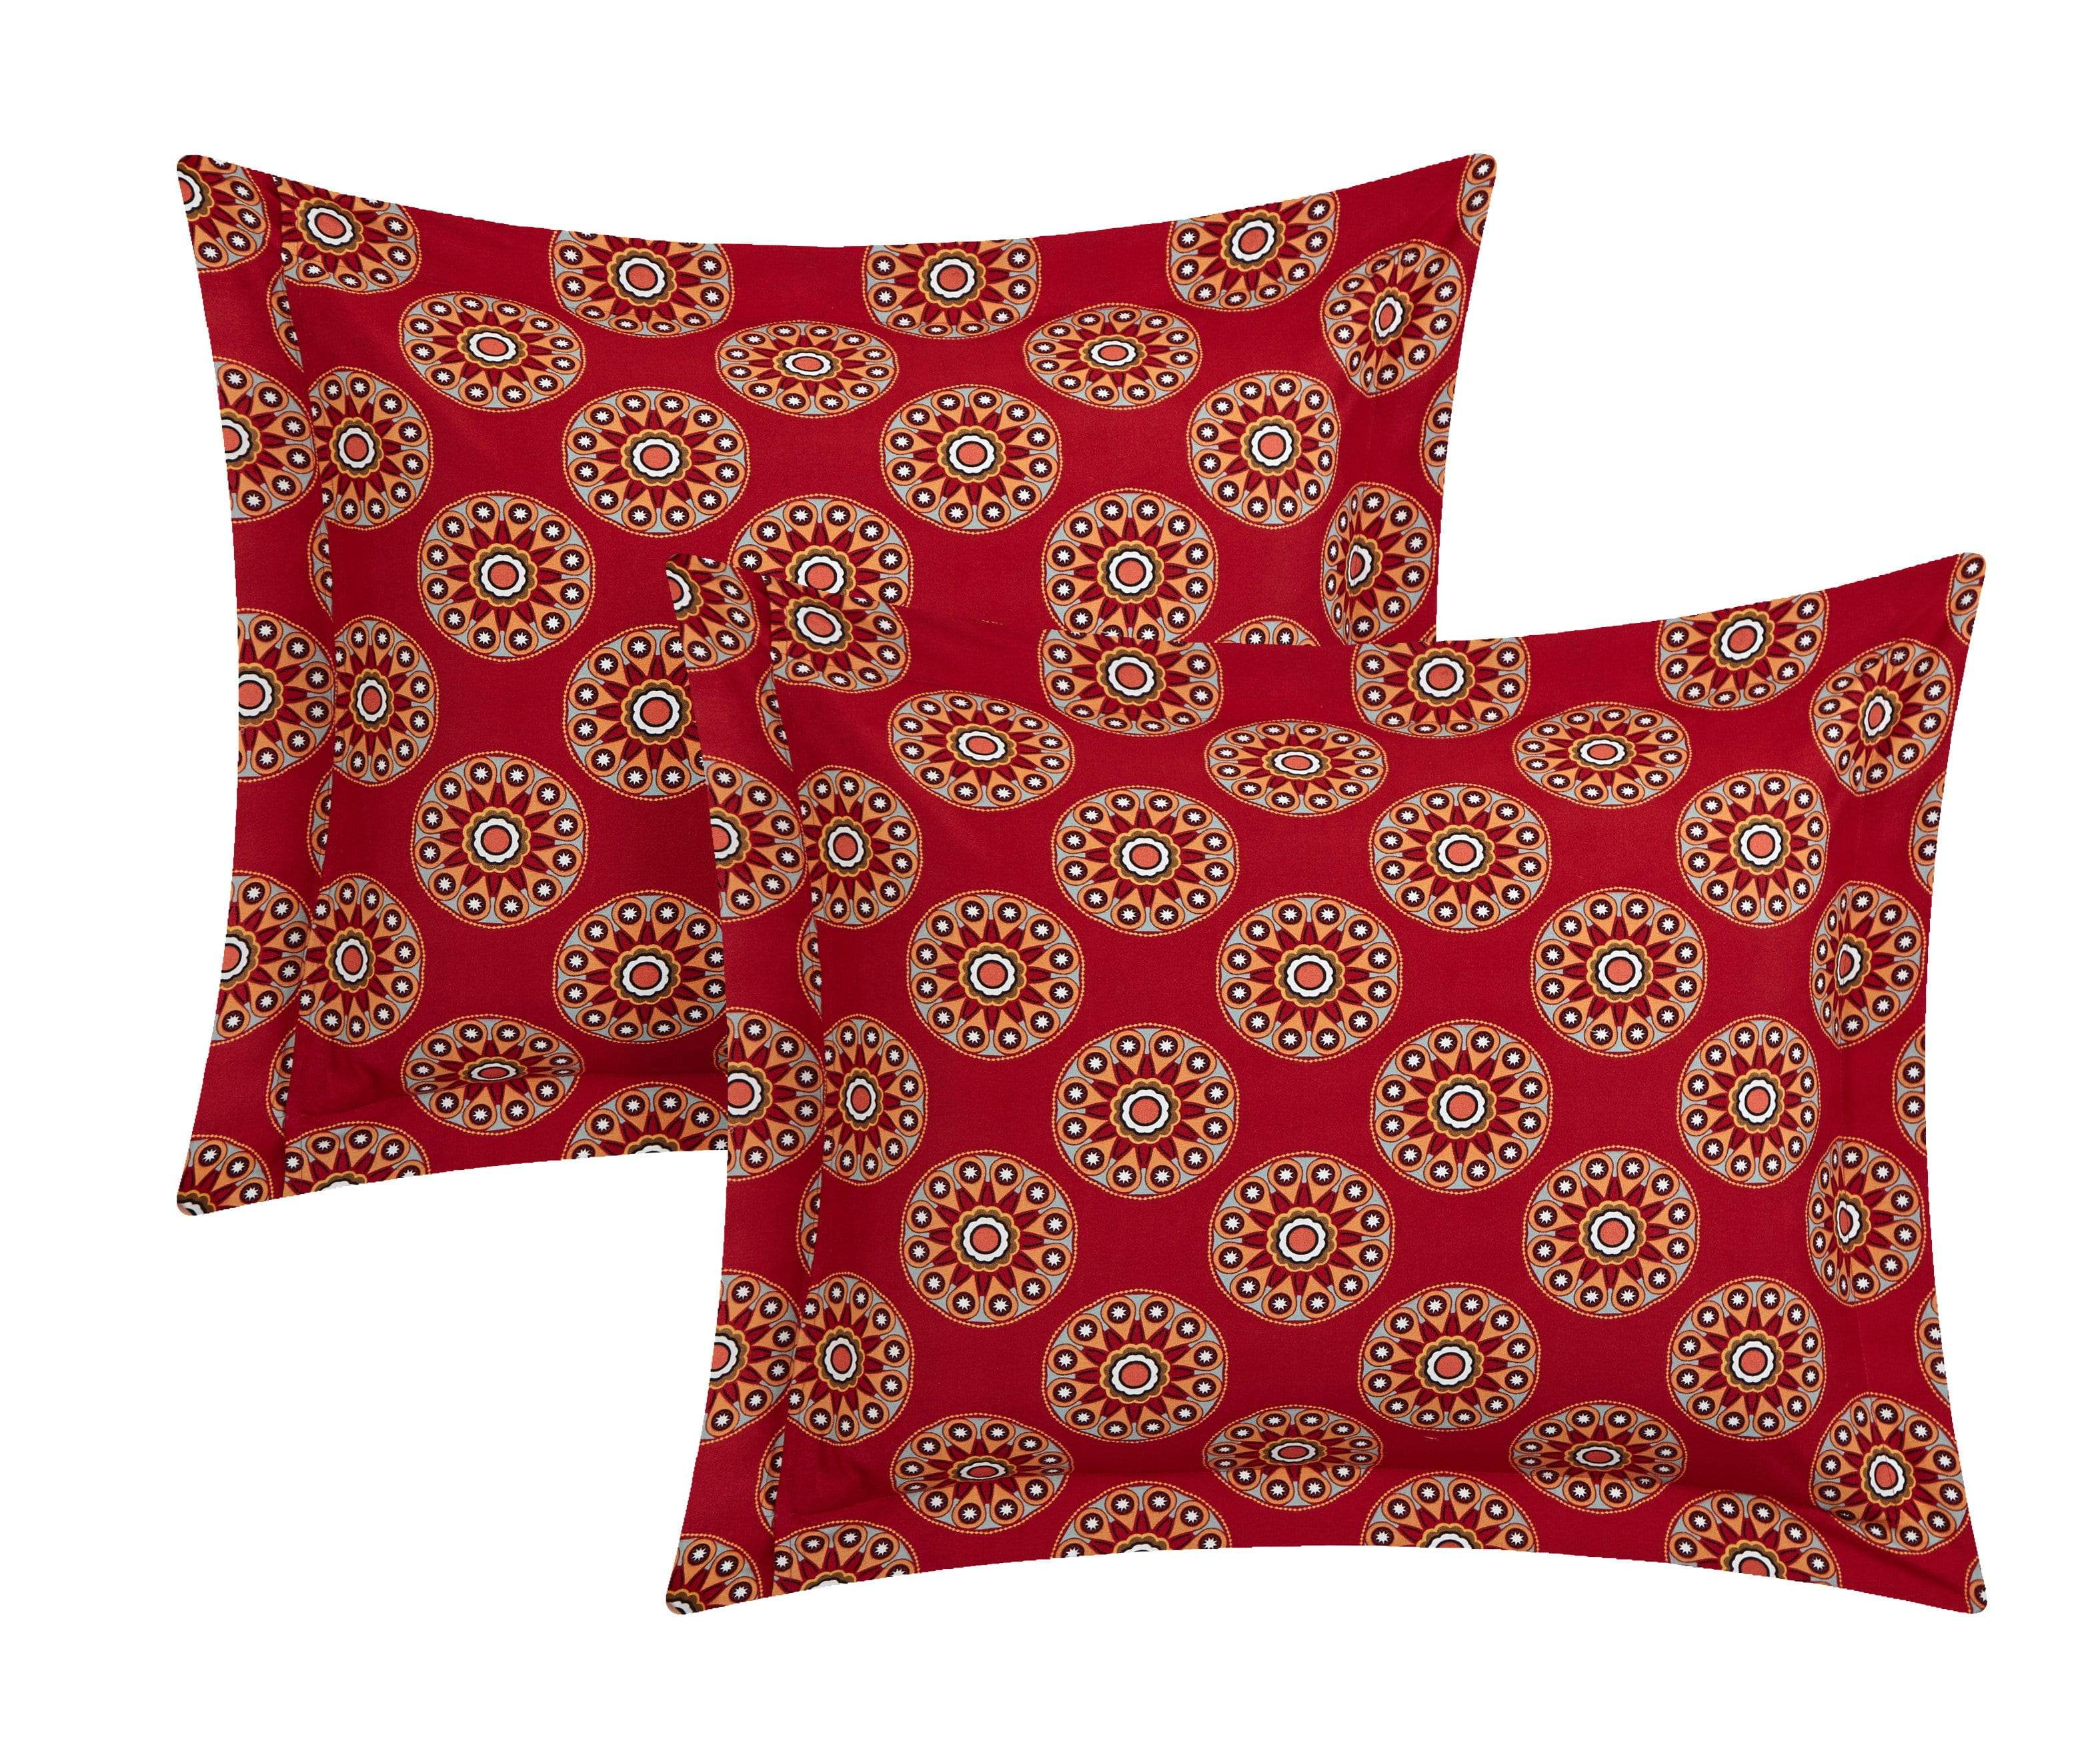 Aberdeen 10 Piece Boho Paisley Comforter Set